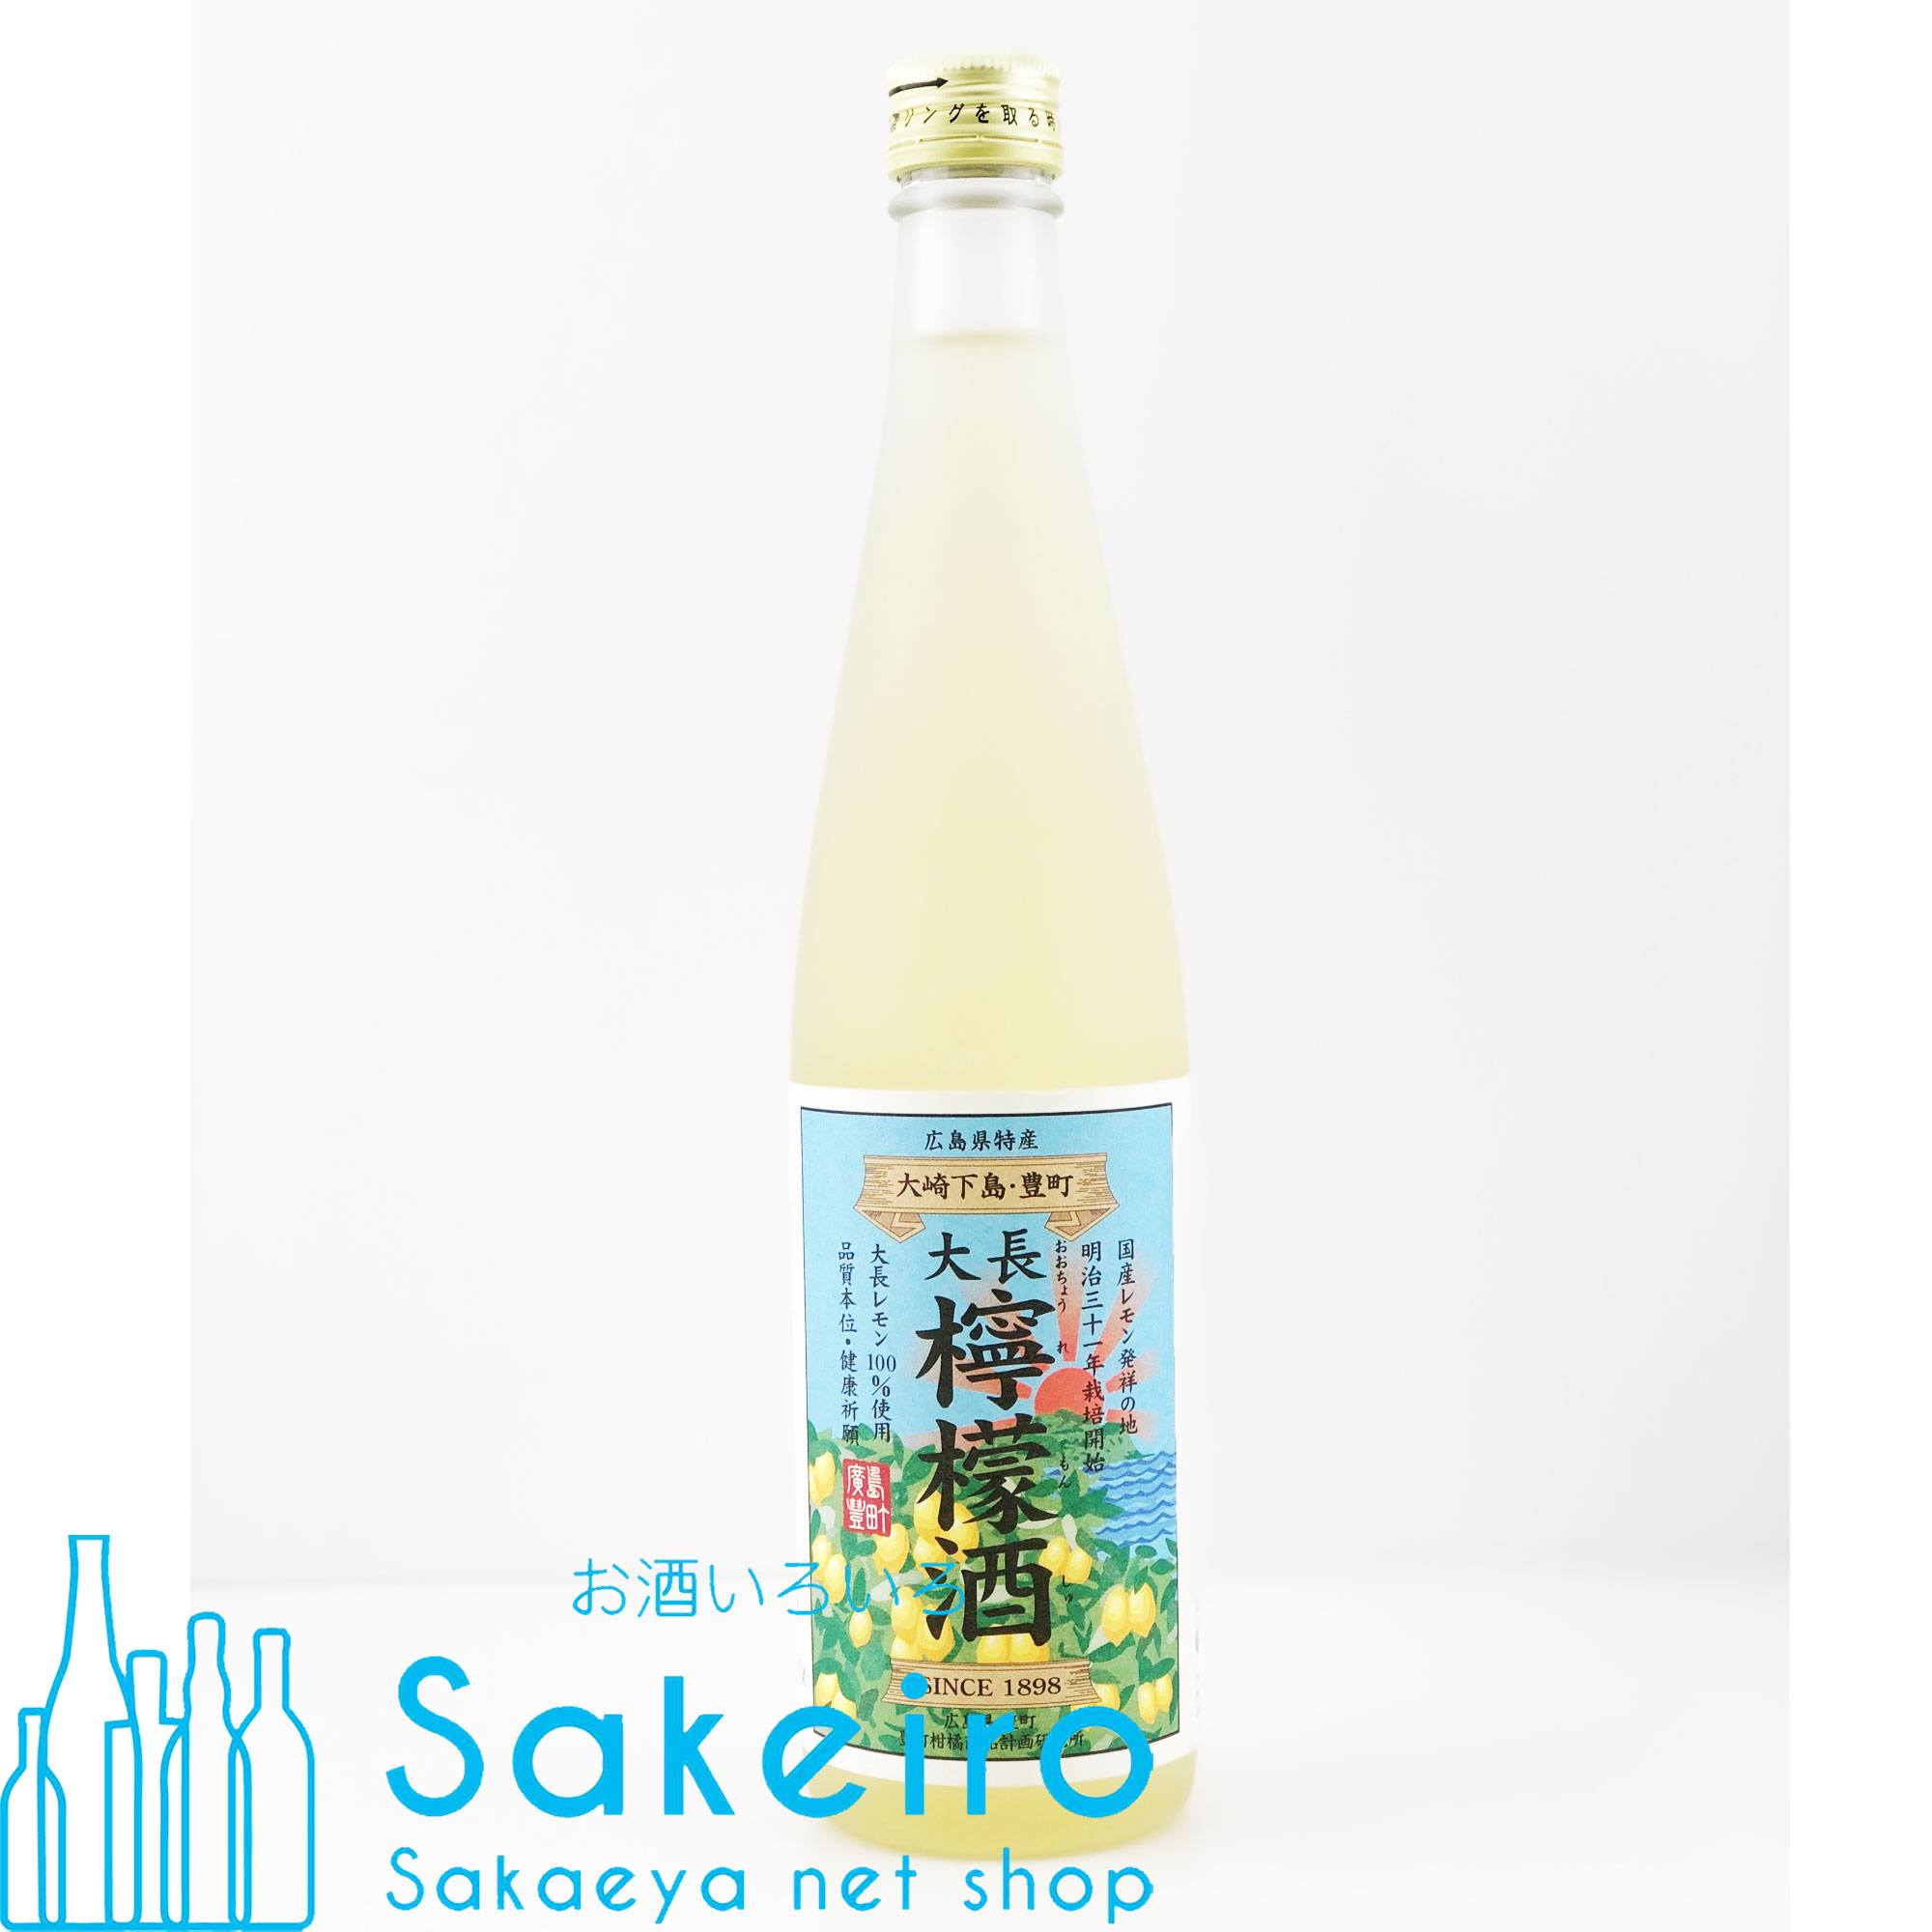 日本全国送料無料 果実酒 広島 大長檸檬酒 500ml 8度 化粧箱入り れもん レモン